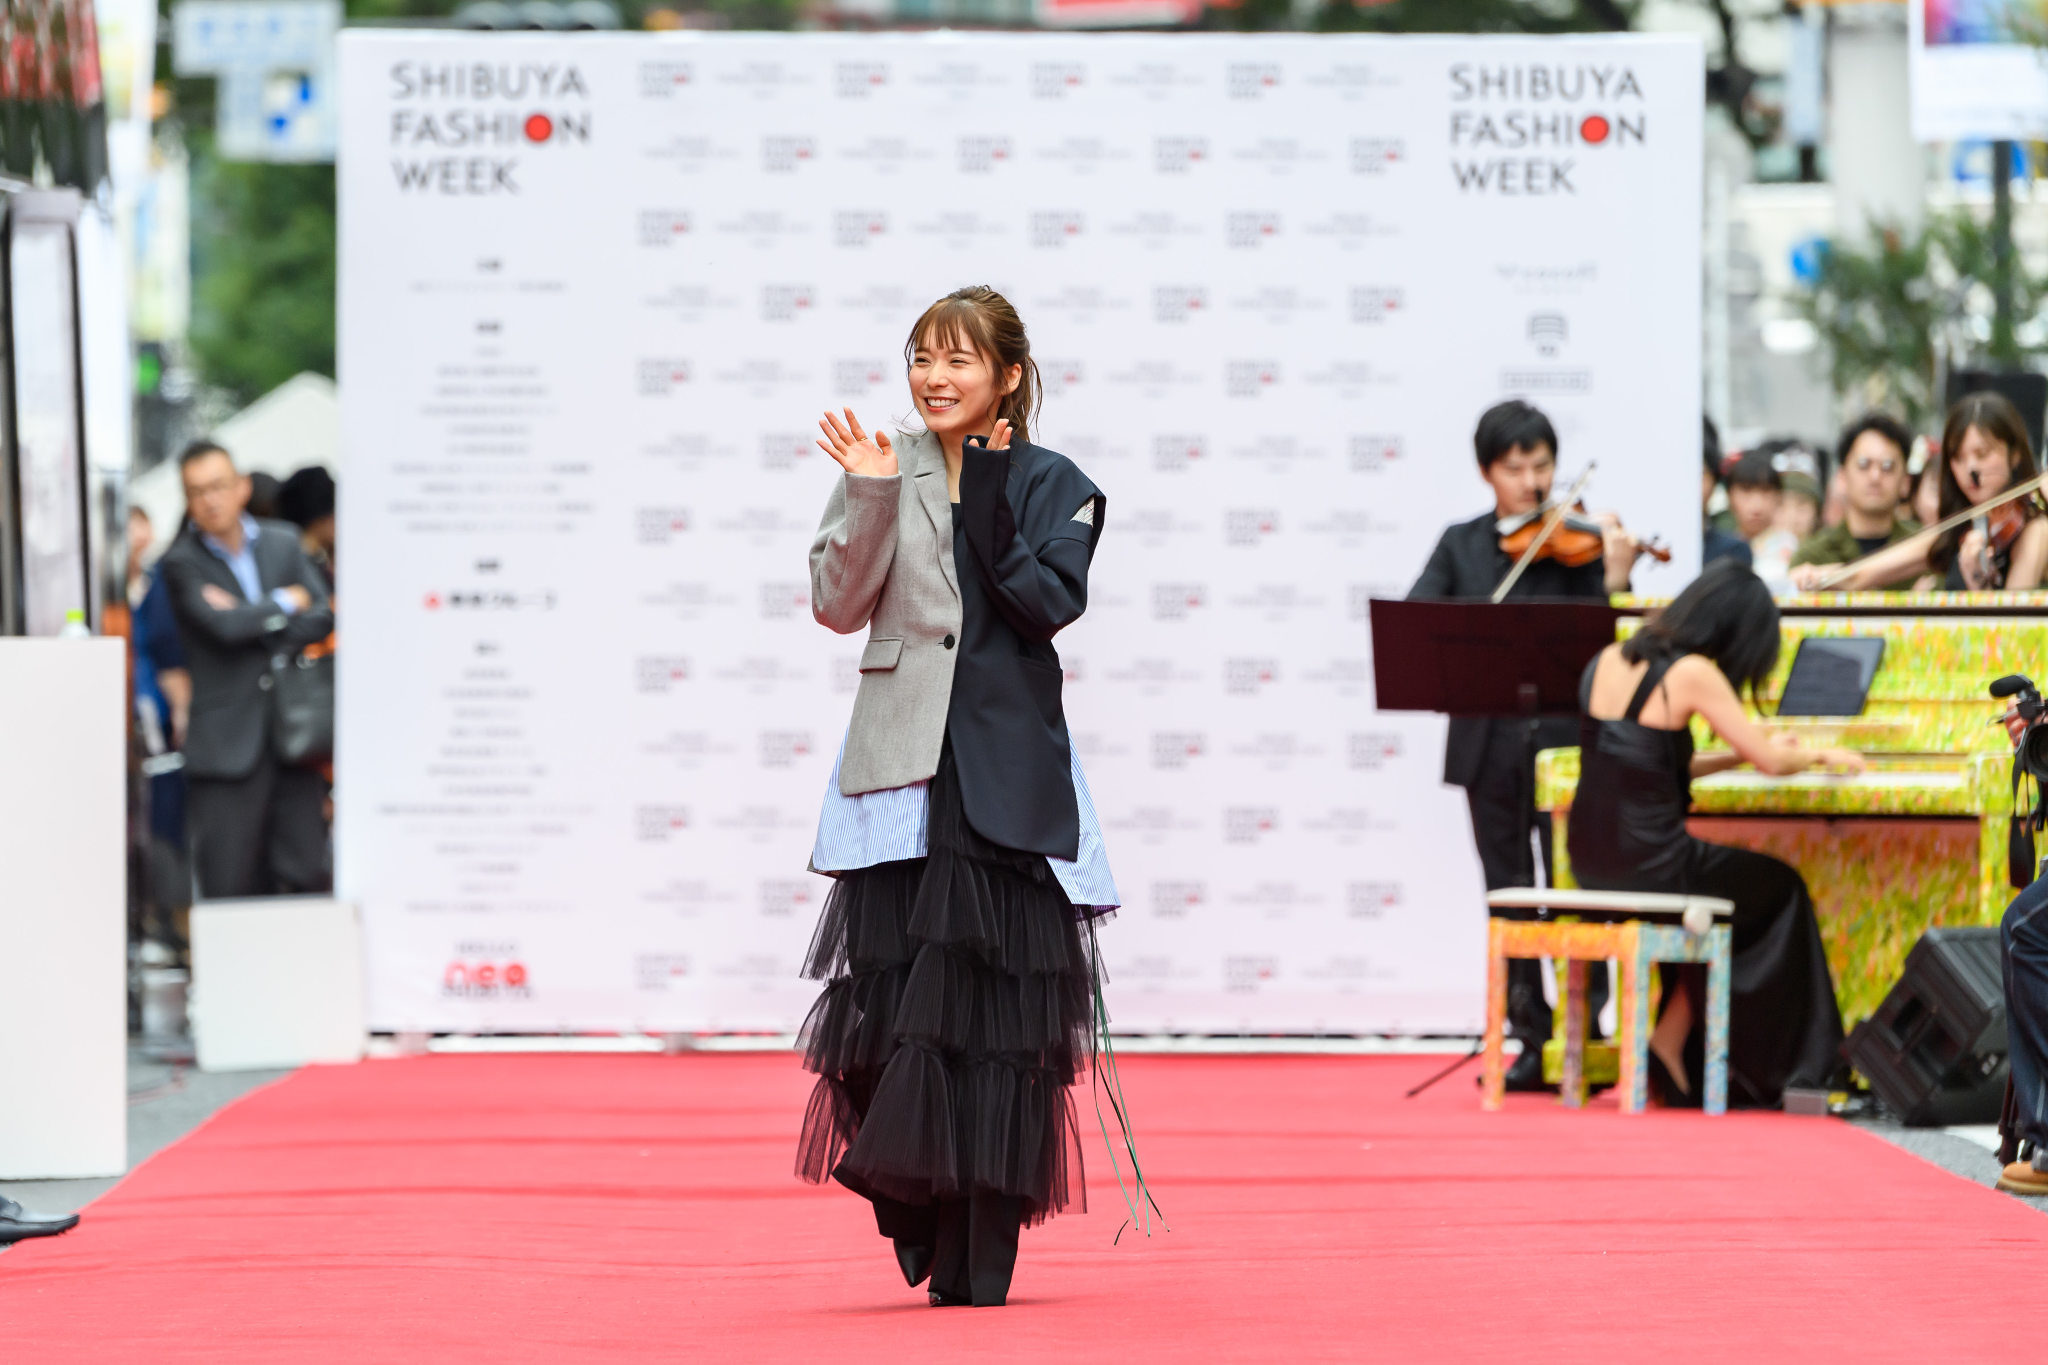 第12回 渋谷ファッションウイーク 松岡茉優がランウェイに登場 映画 蜜蜂と遠雷 オーケストラの生演奏をバックに 渋谷の自由っぽさを表現 Universal Press ユニバーサルプレス